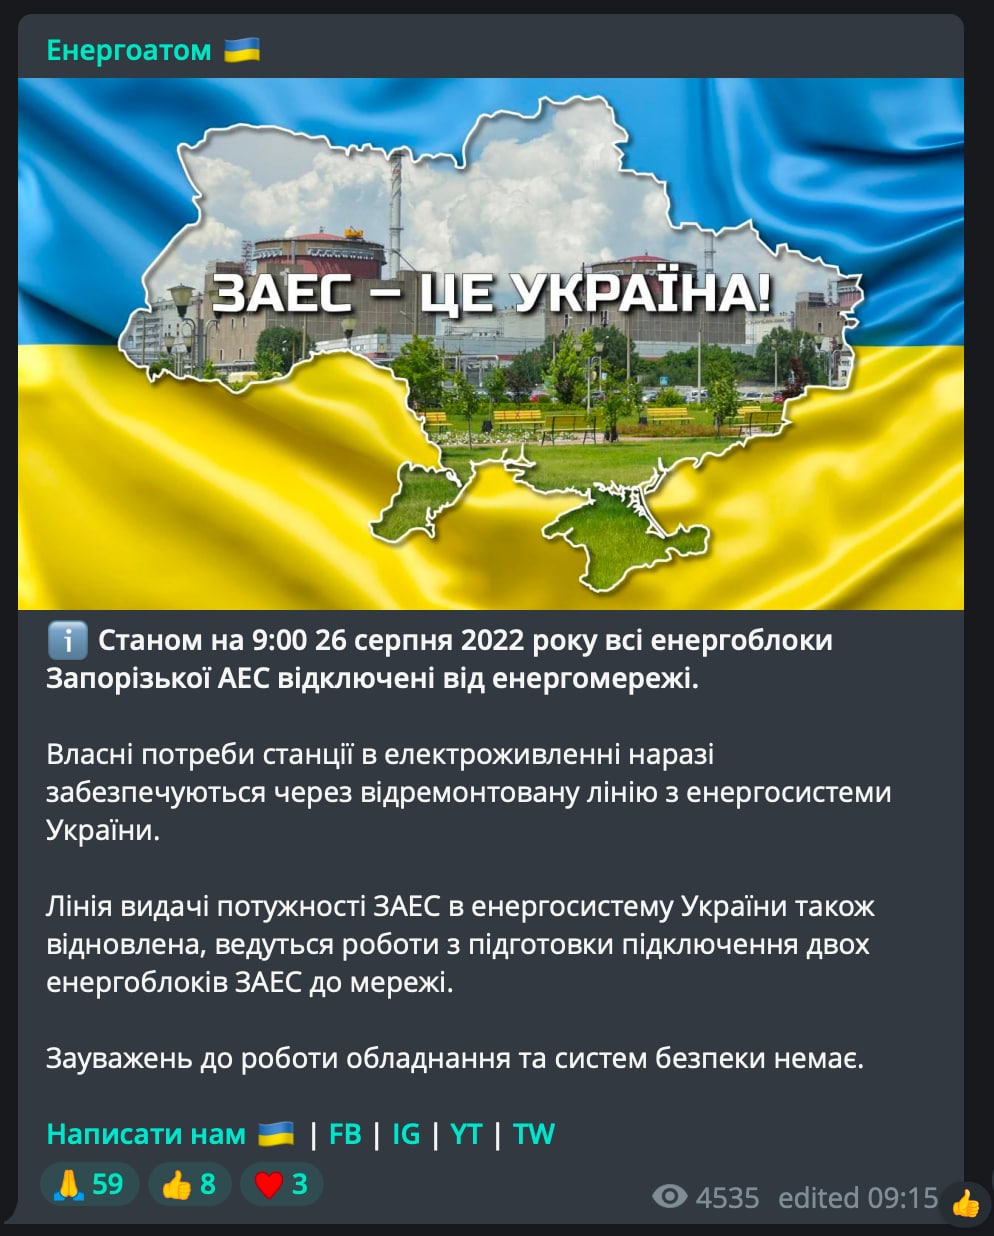 Реальная война телеграмм украина 18 (120) фото